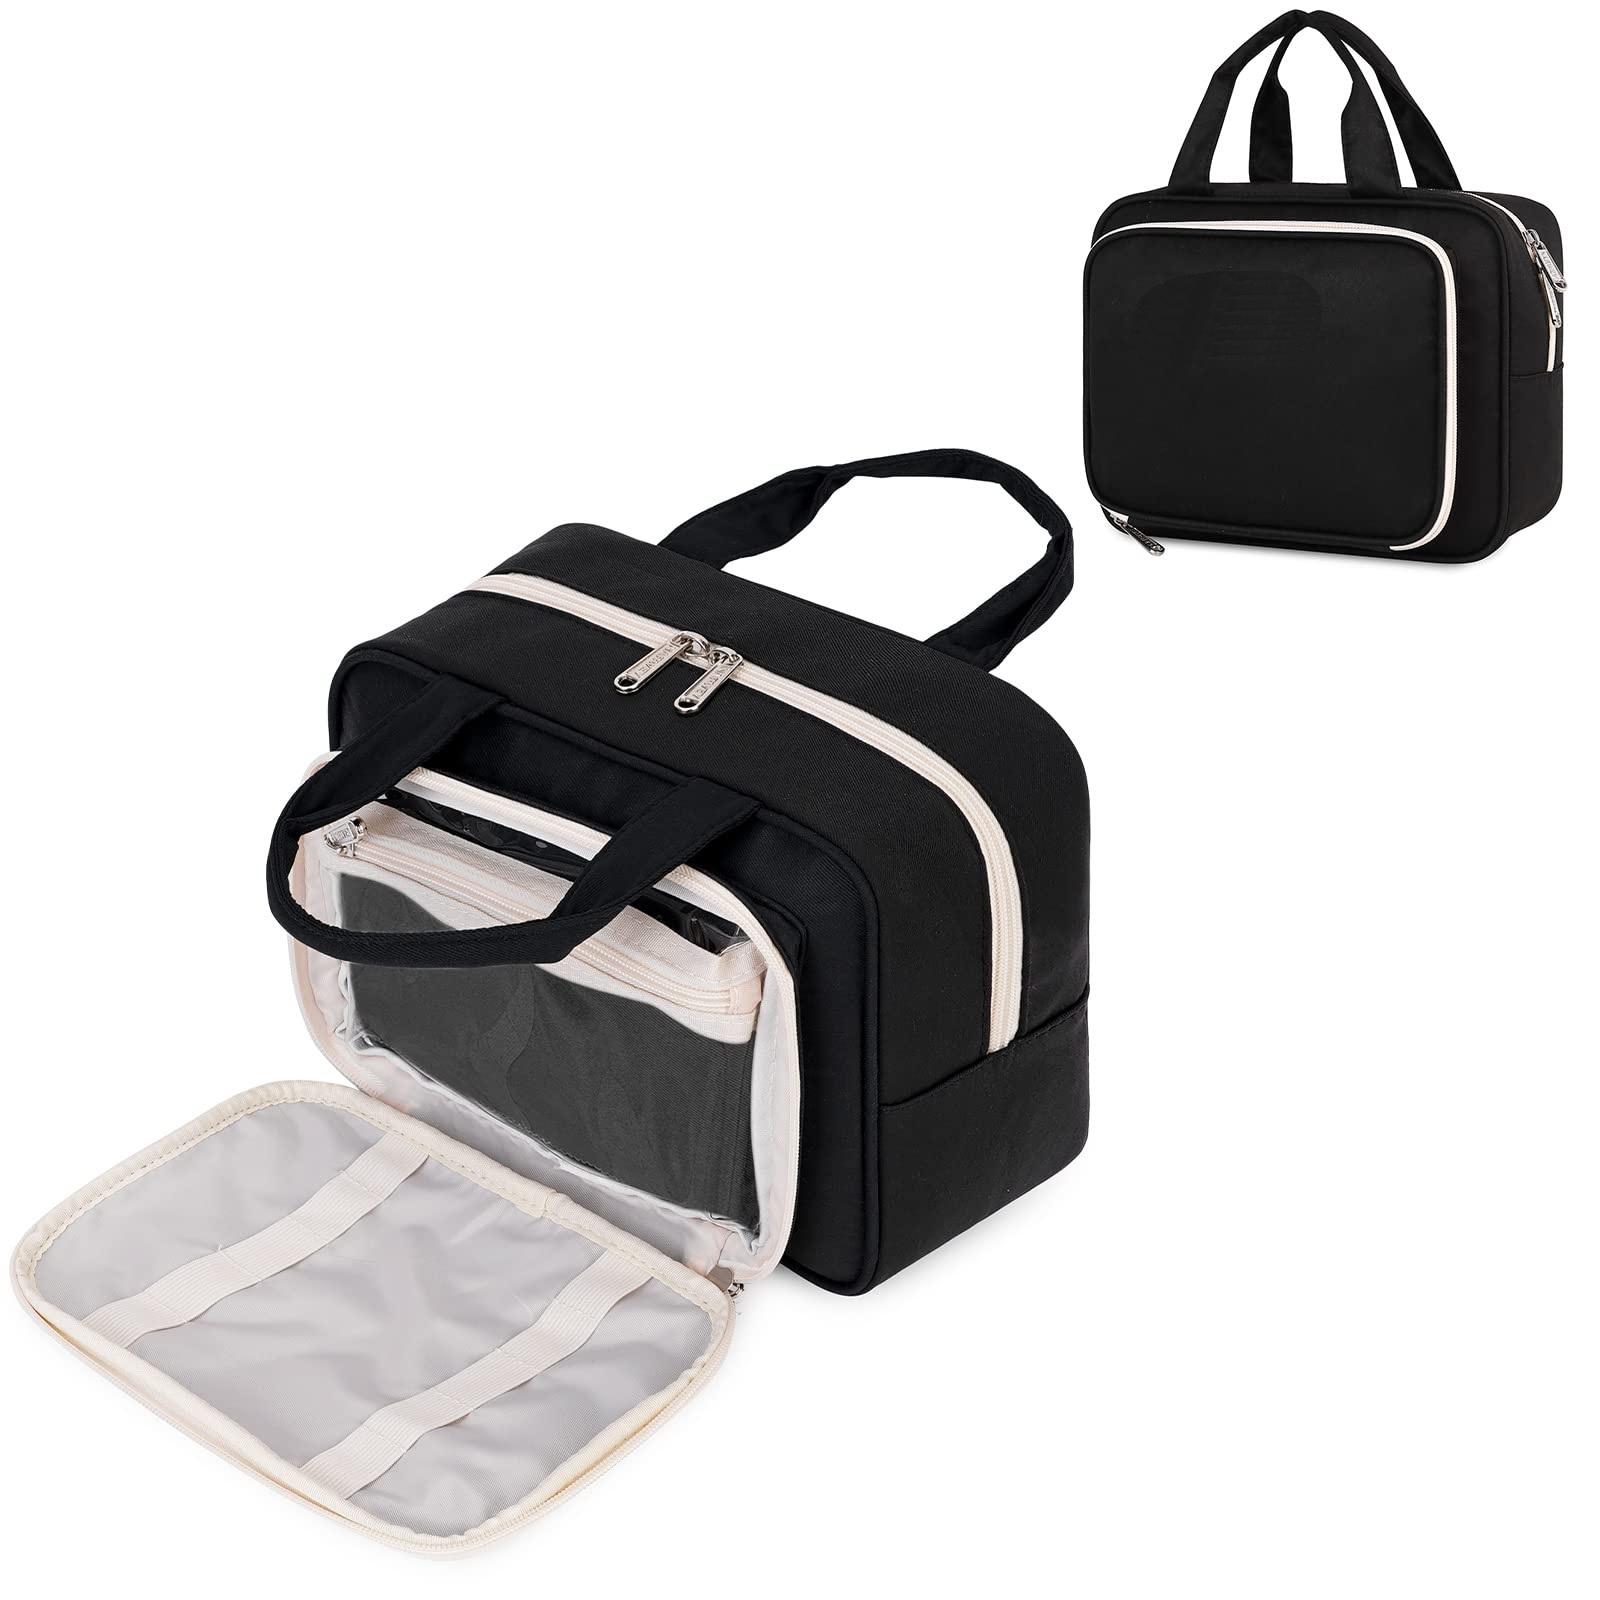 Travel Cosmetics Bag Large Capacity Toiletry Organizer Bag Premium Makeup Bag